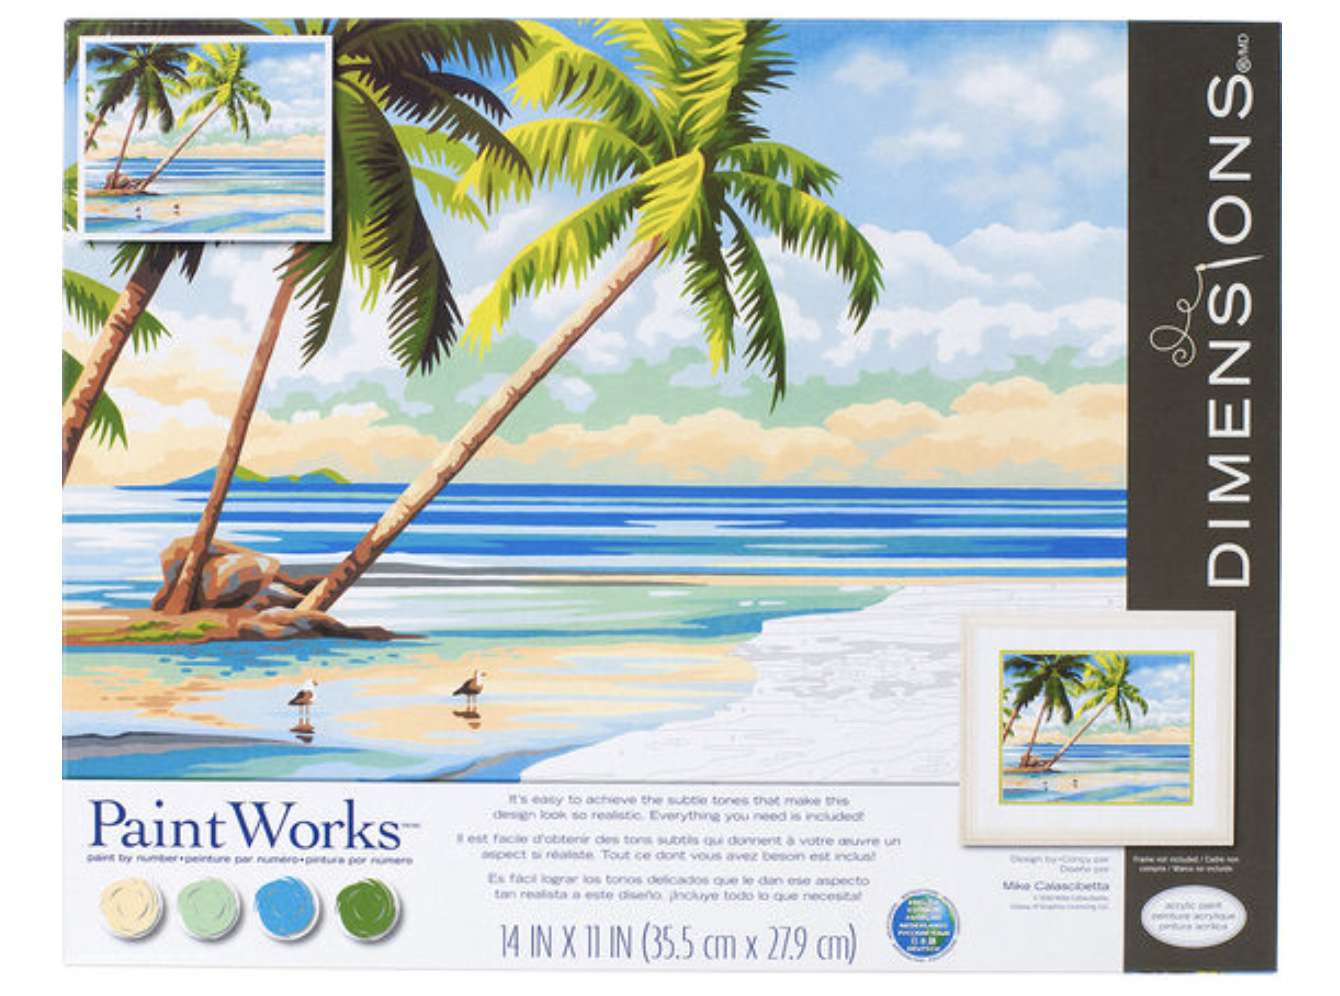 PaintWorks热带景观油漆由数字工具包